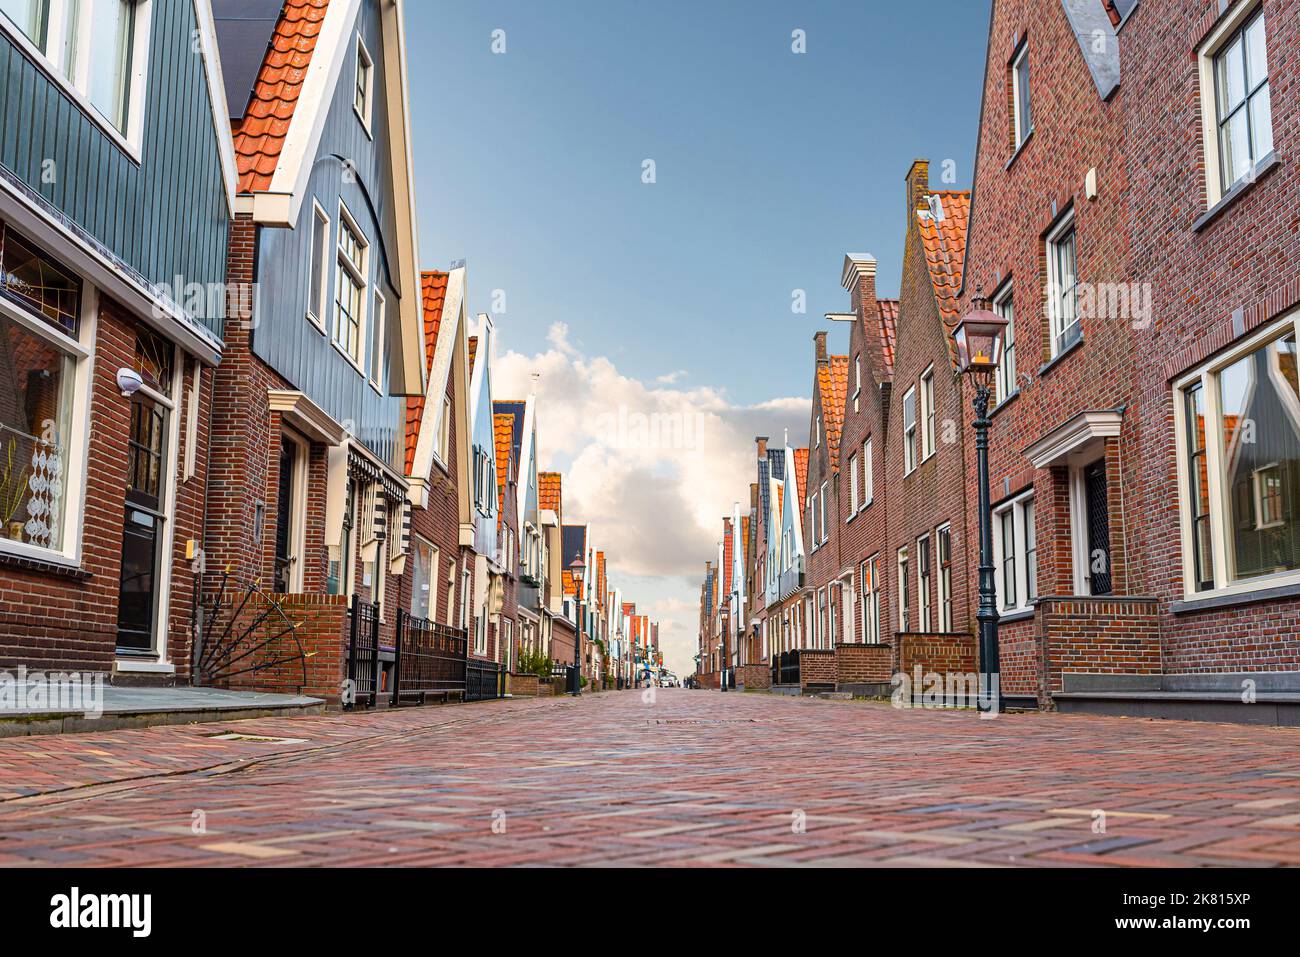 Vista de ángulo bajo de calles adoquinadas y edificios típicos en la ciudad holandesa de Volendam contra el cielo azul Foto de stock